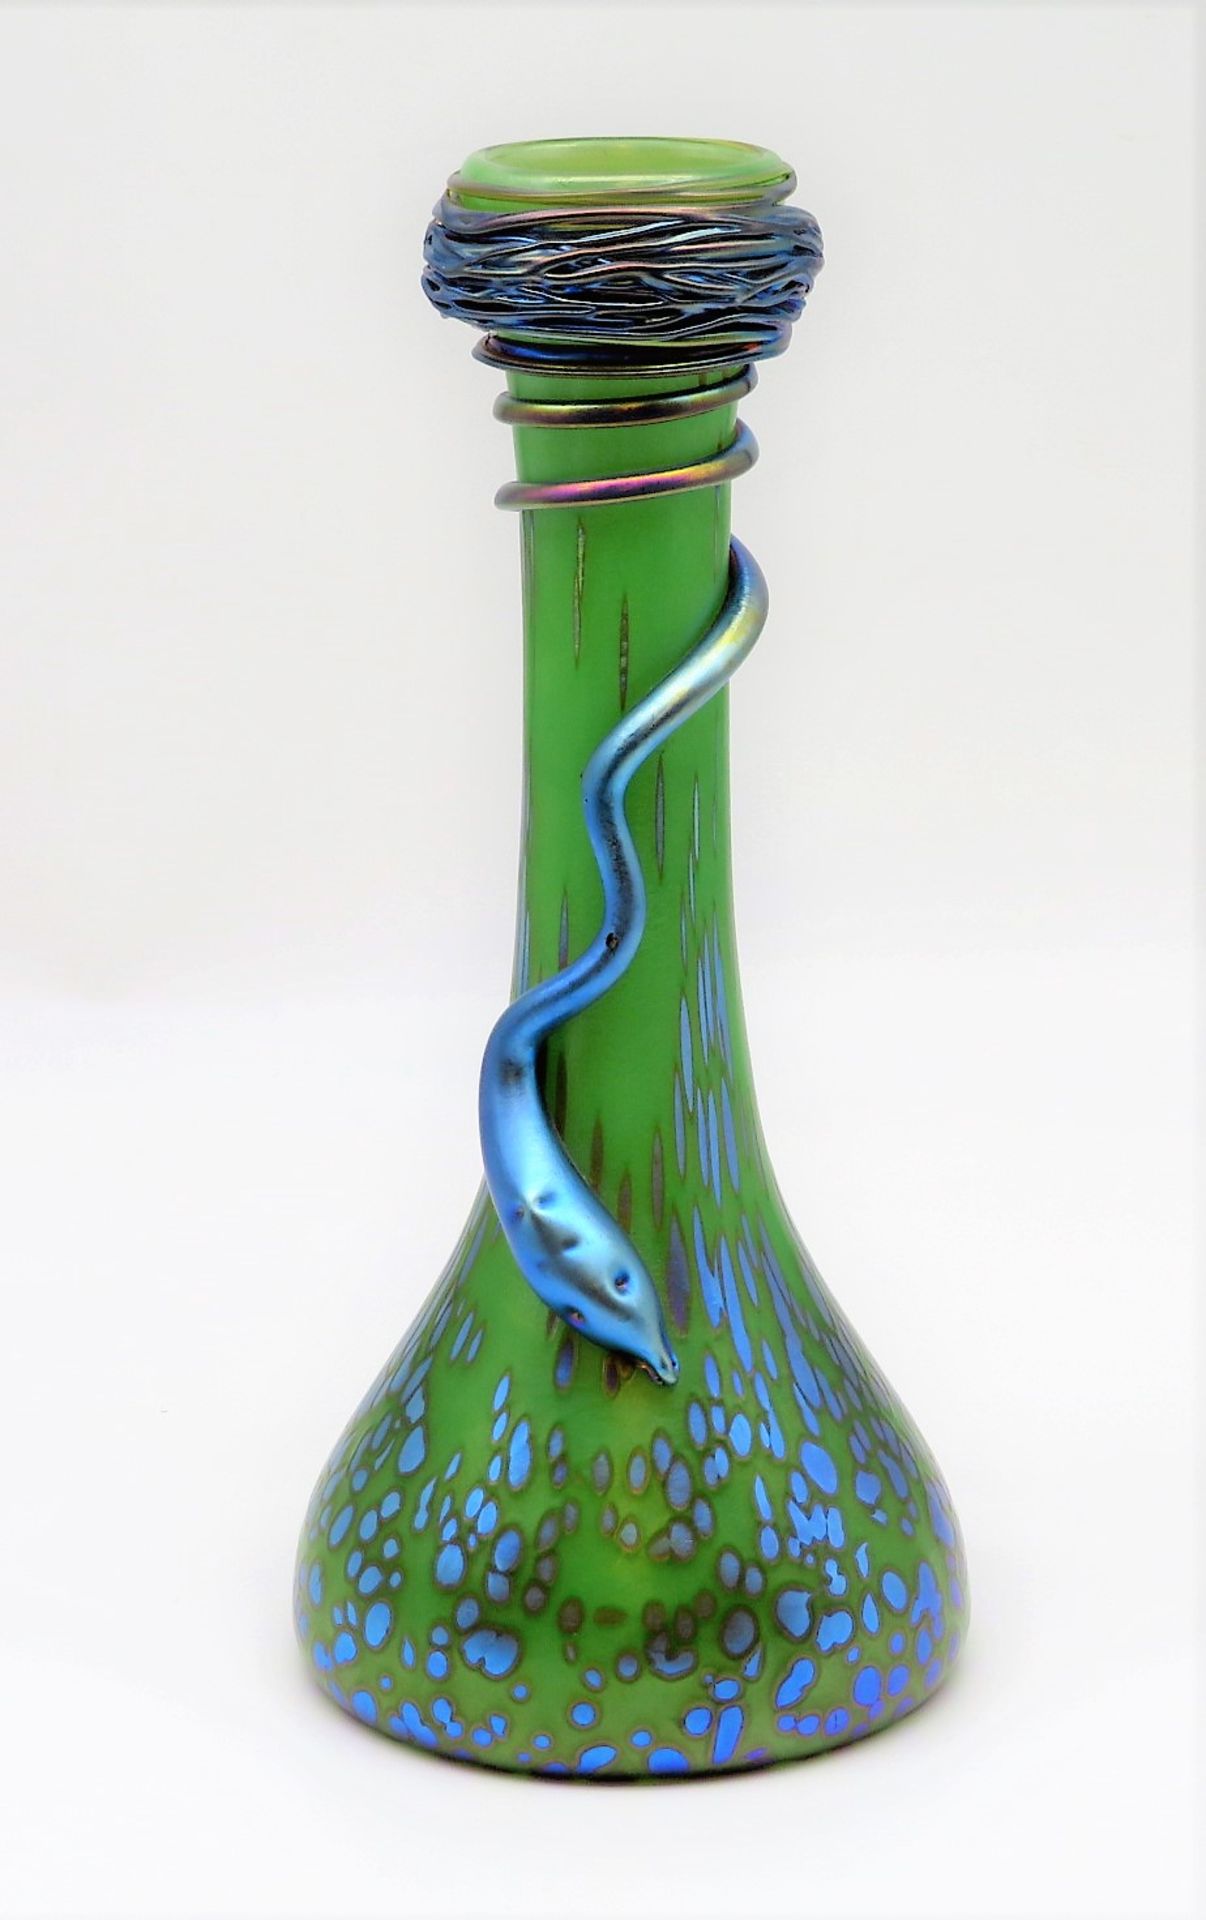 Jugendstil Vase, Österreich, wohl Loetz-Witwe Klostermühle, um 1900, Grünlich eingefärbtes Glas mit